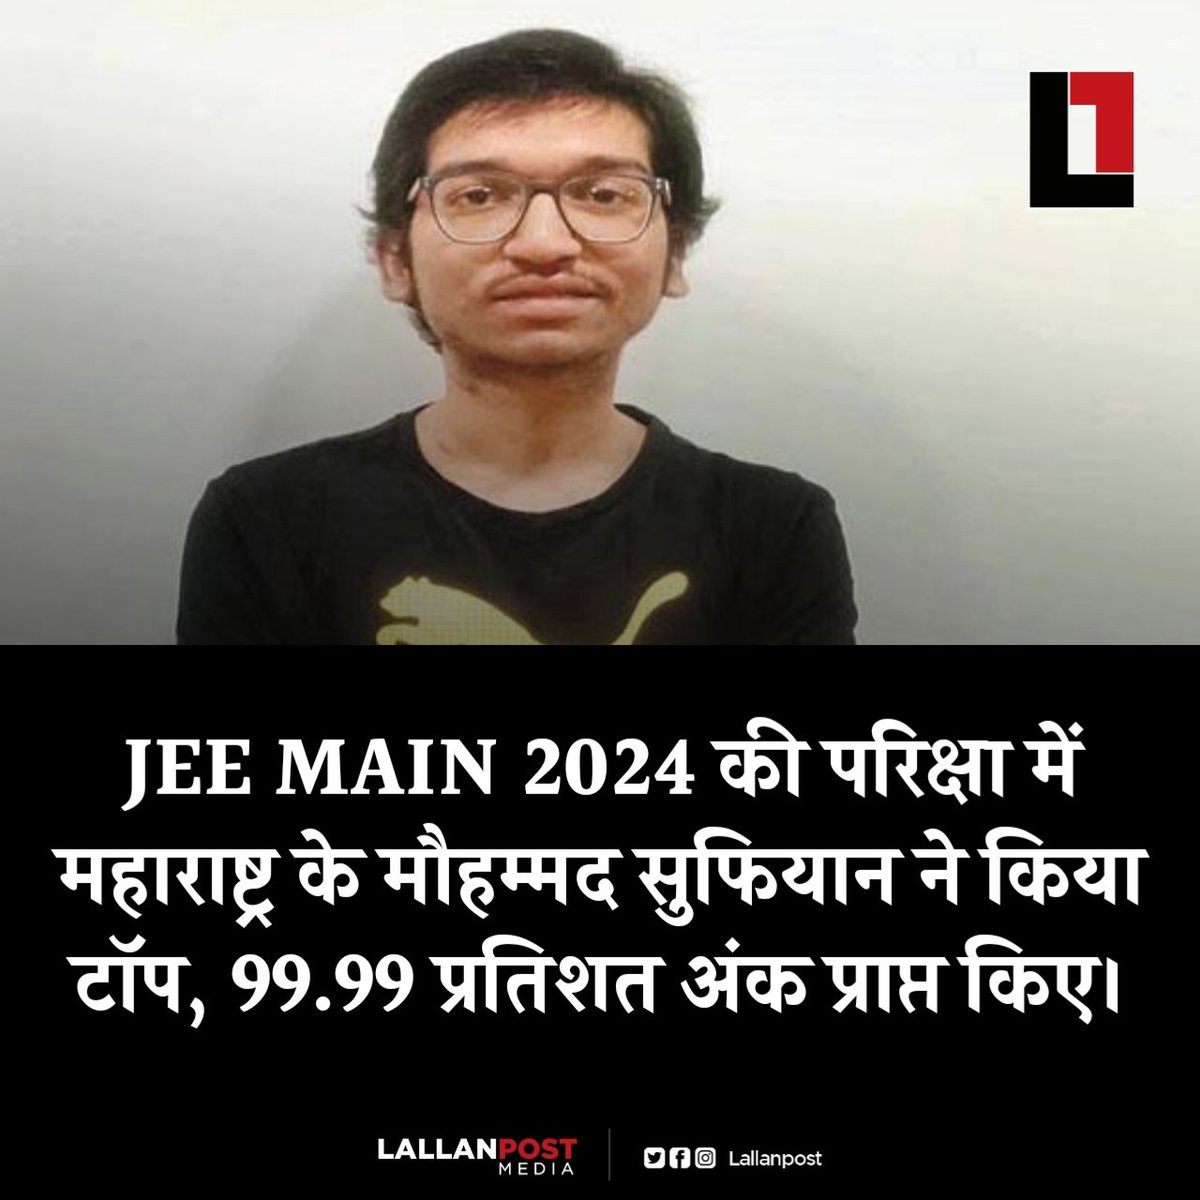 JEE MAIN 2024 की परिक्षा में महाराष्ट्र के मौहम्मद सुफियान ने किया टॉप, 99.99 प्रतिशत अंक प्राप्त किए।